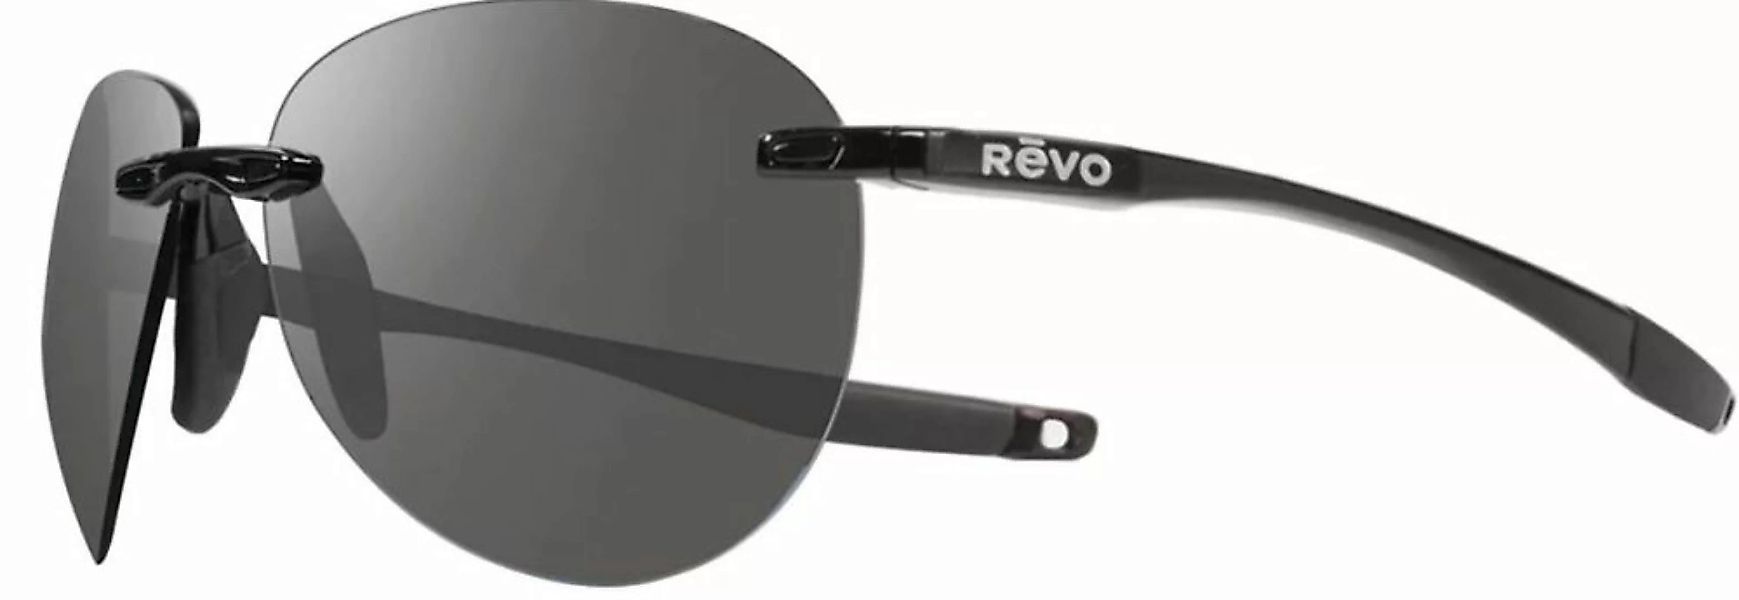 Revo Descend A (RE 1169 01 GY) [Black Graphite] - Herren Sonnenbrille günstig online kaufen